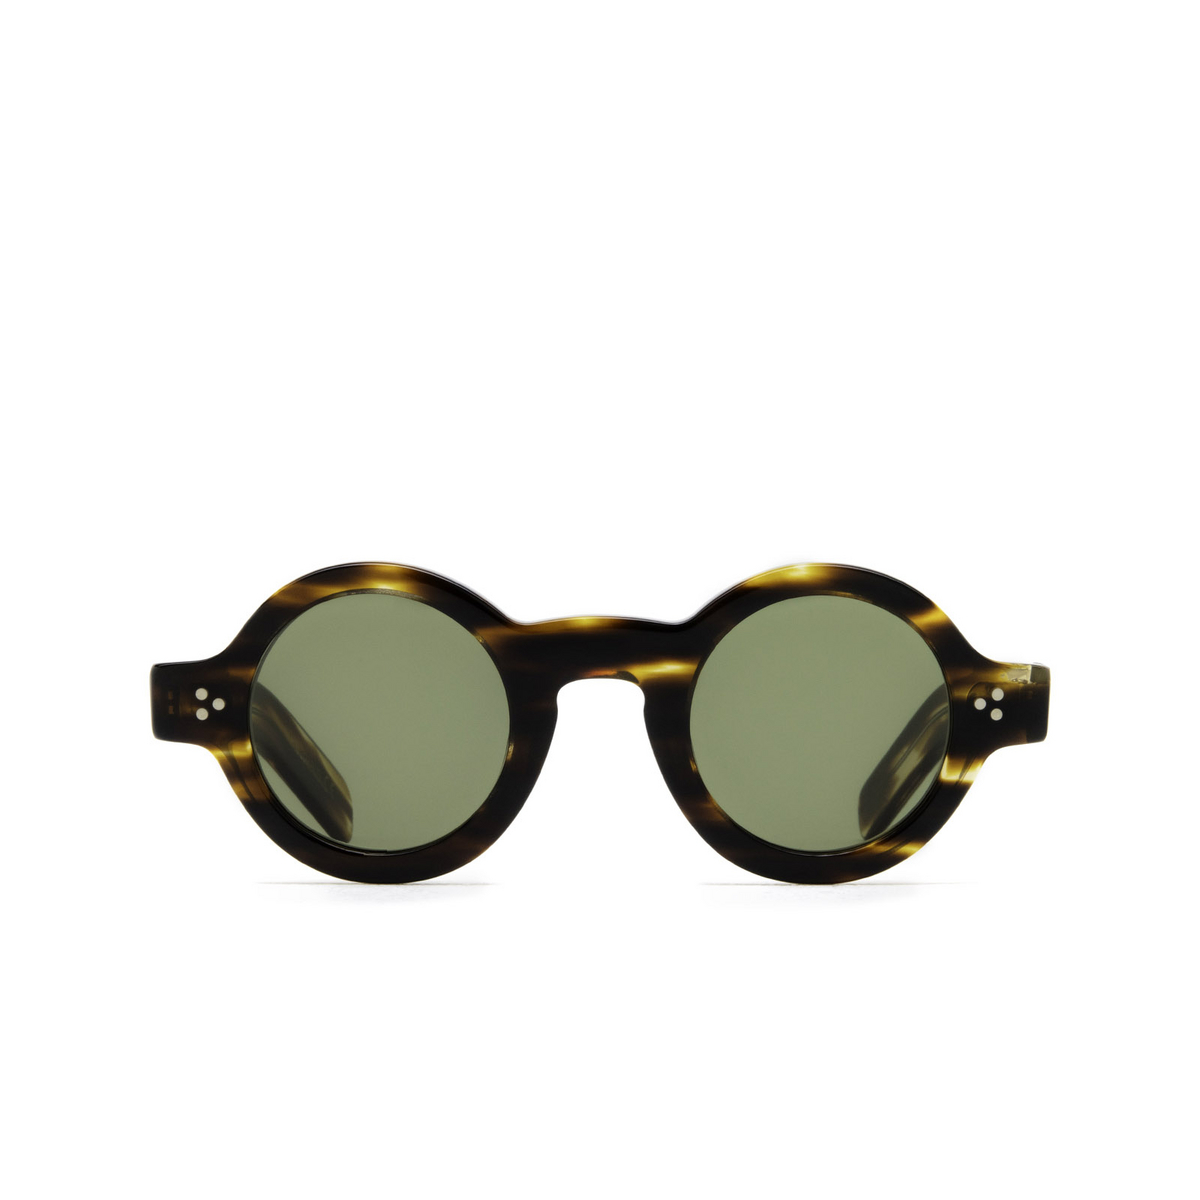 Lesca® Round Sunglasses: Tabu color Dark Scale 1 A3 - front view.